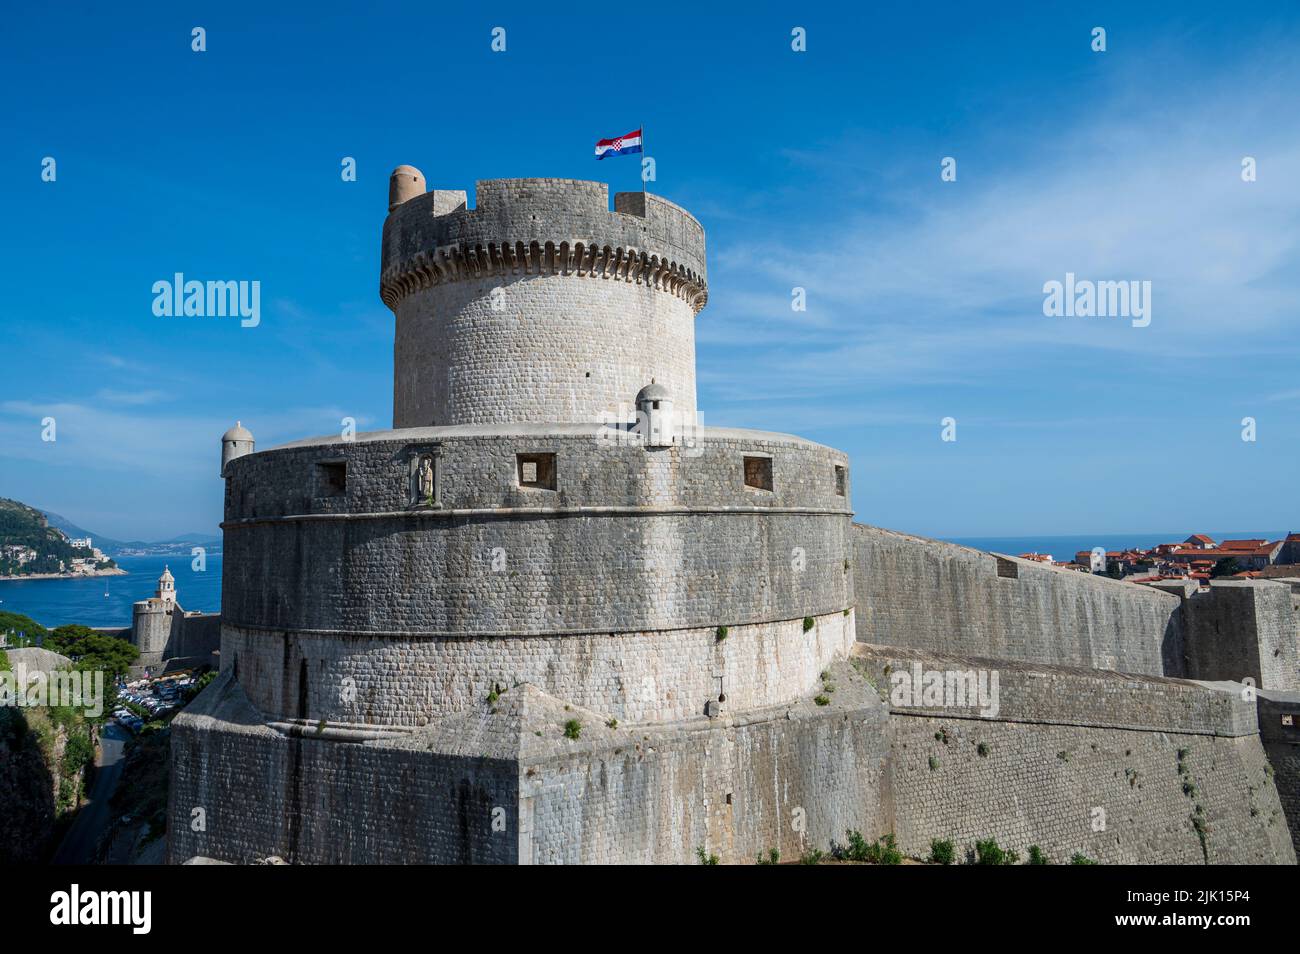 Forteresse de Saint-Jean qui garde la vieille ville, site classé au patrimoine mondial de l'UNESCO, Dubrovnik, Croatie, Europe Banque D'Images